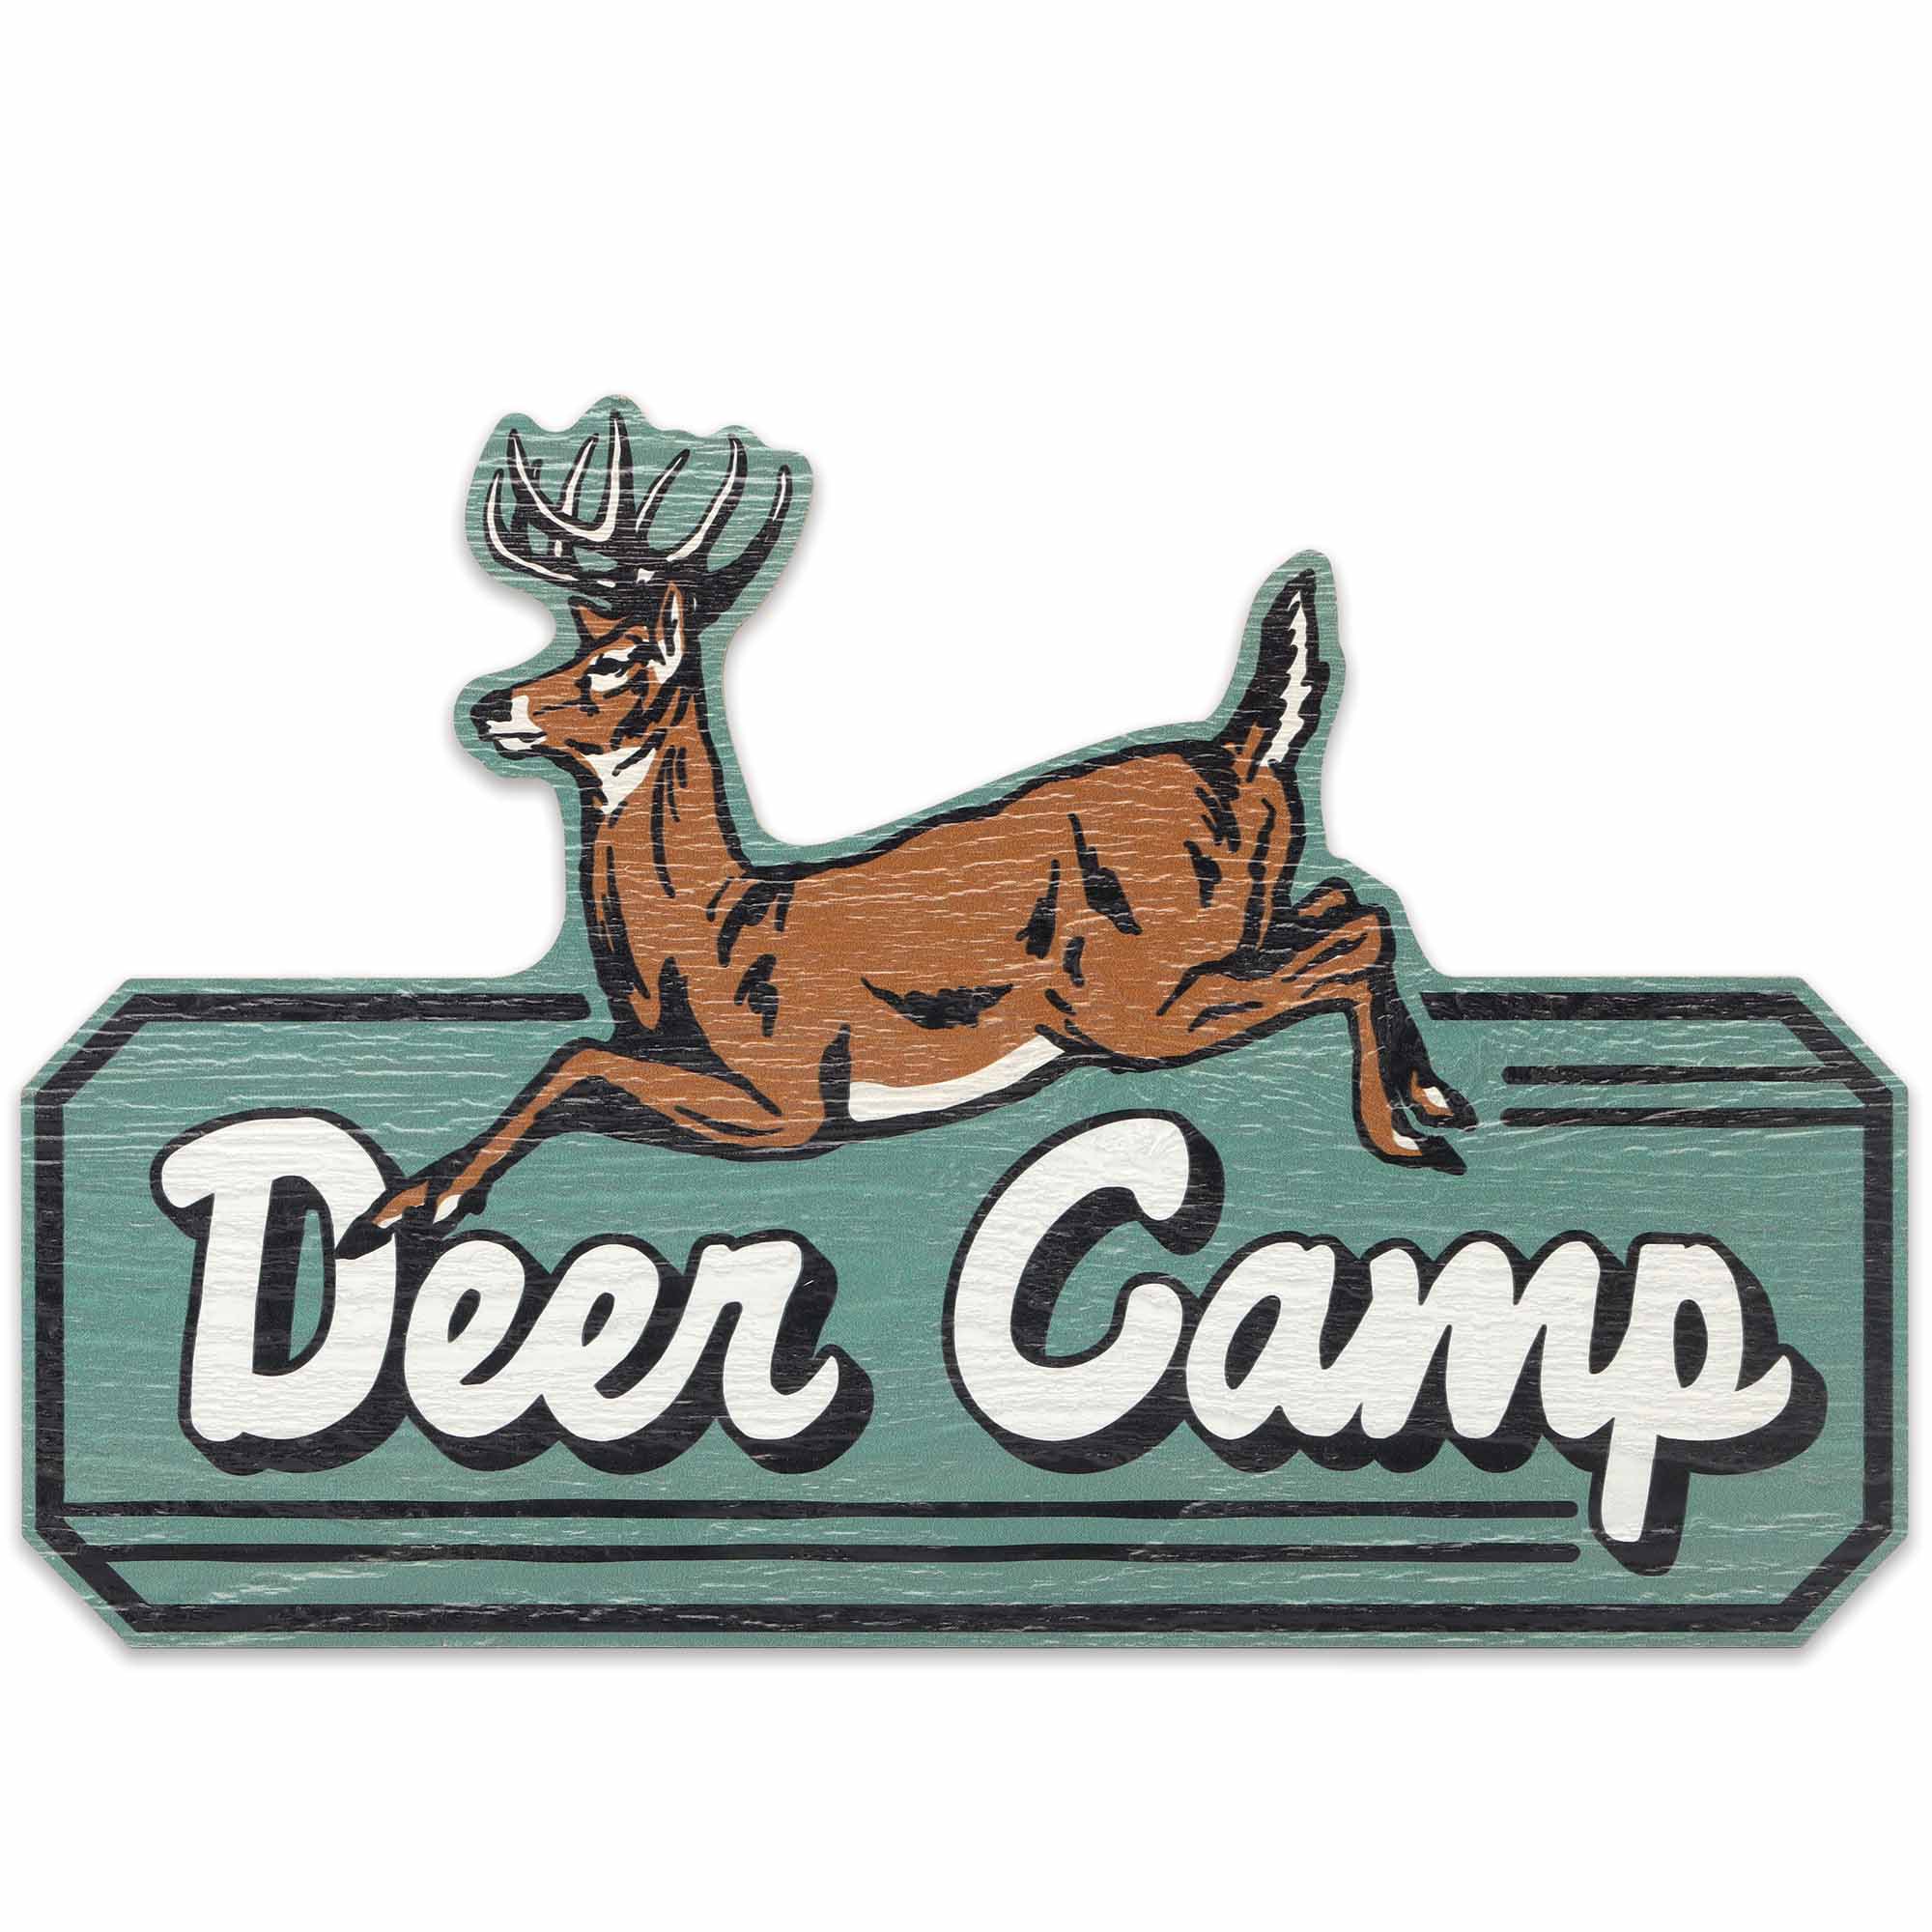 Open Road's Deer Camp Wooden Sign